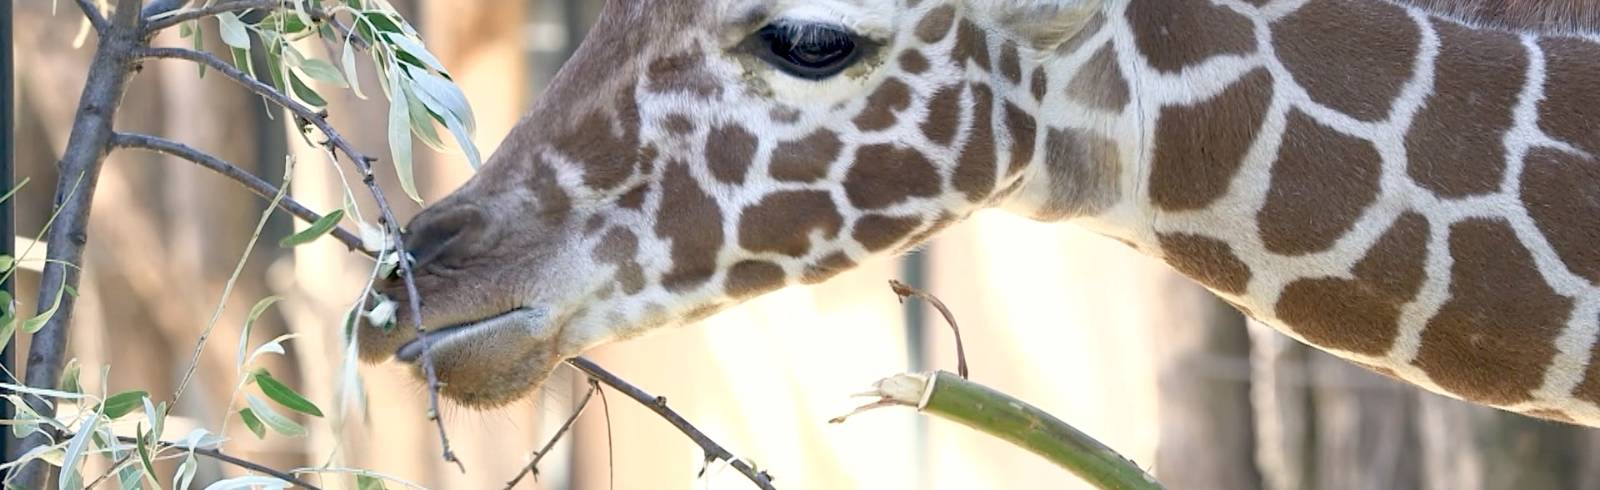 Giraffe Amari bereits ein halbes Jahr alt